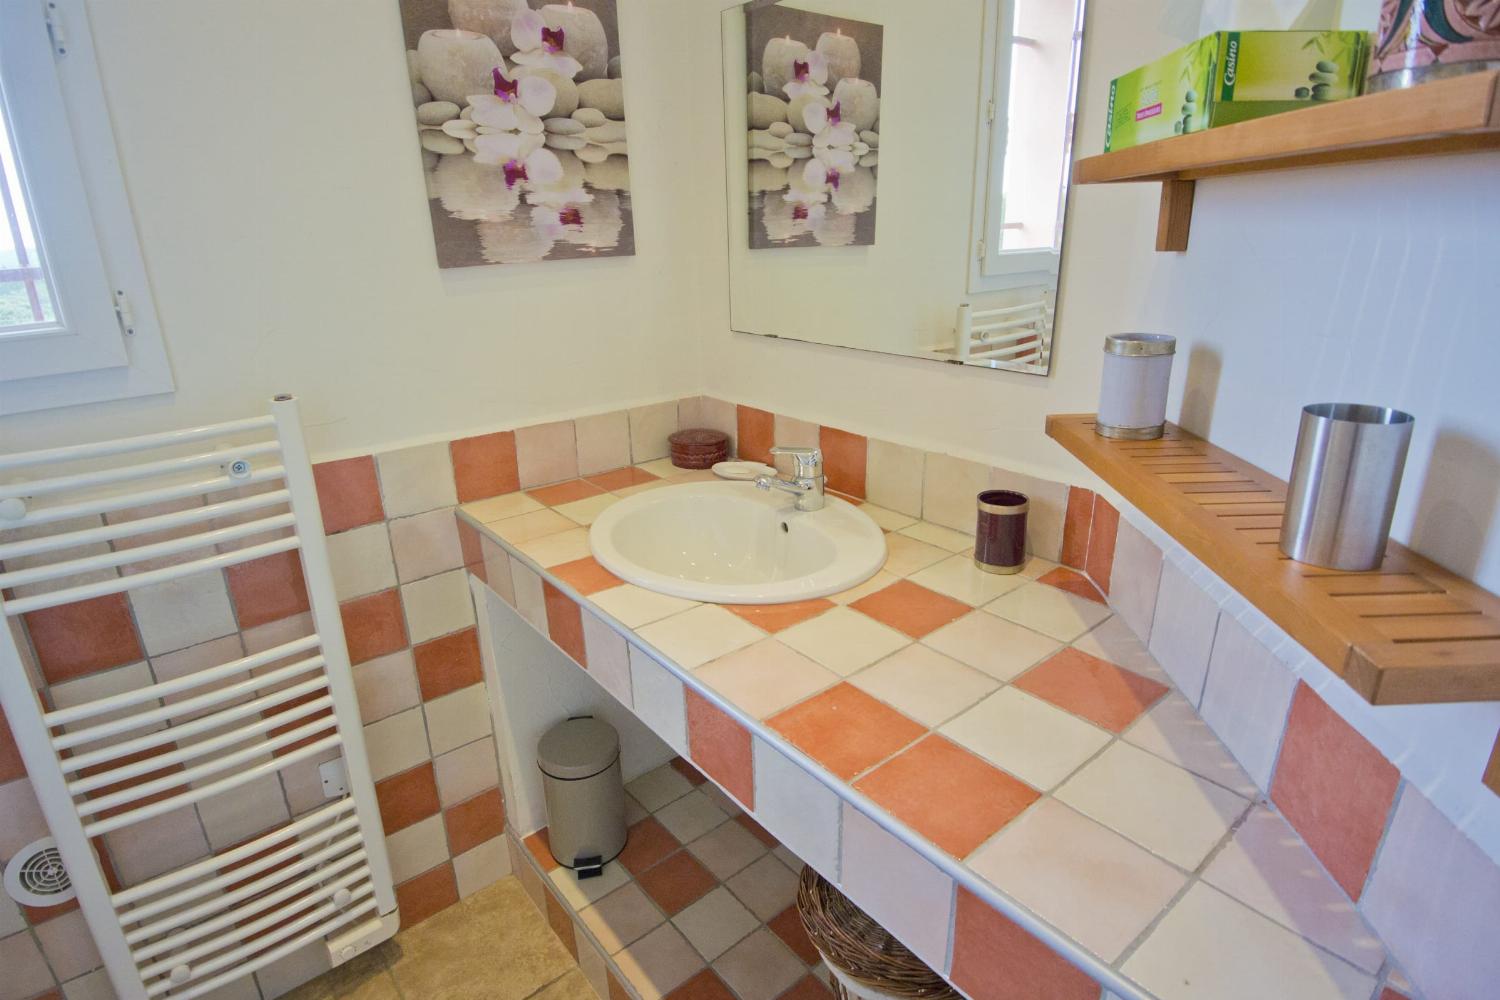 Salle de bain | Villa de vacances en Corse